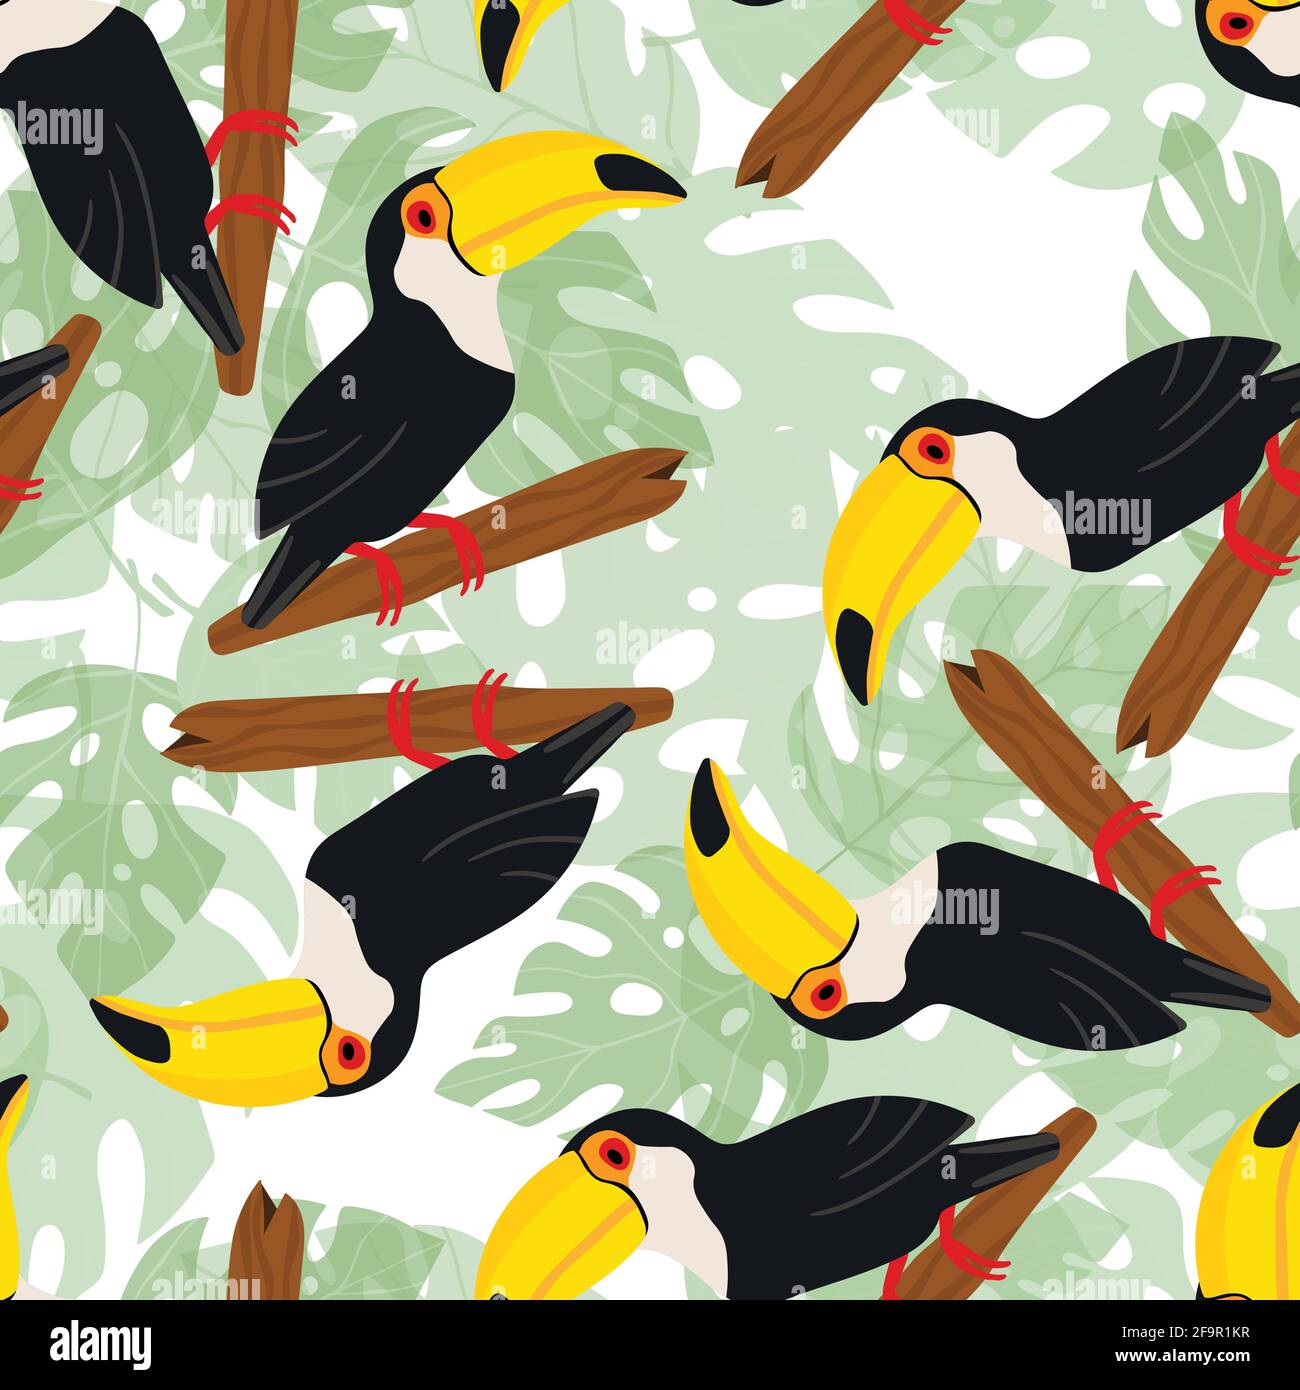 65 Toucan Wallpaper  WallpaperSafari